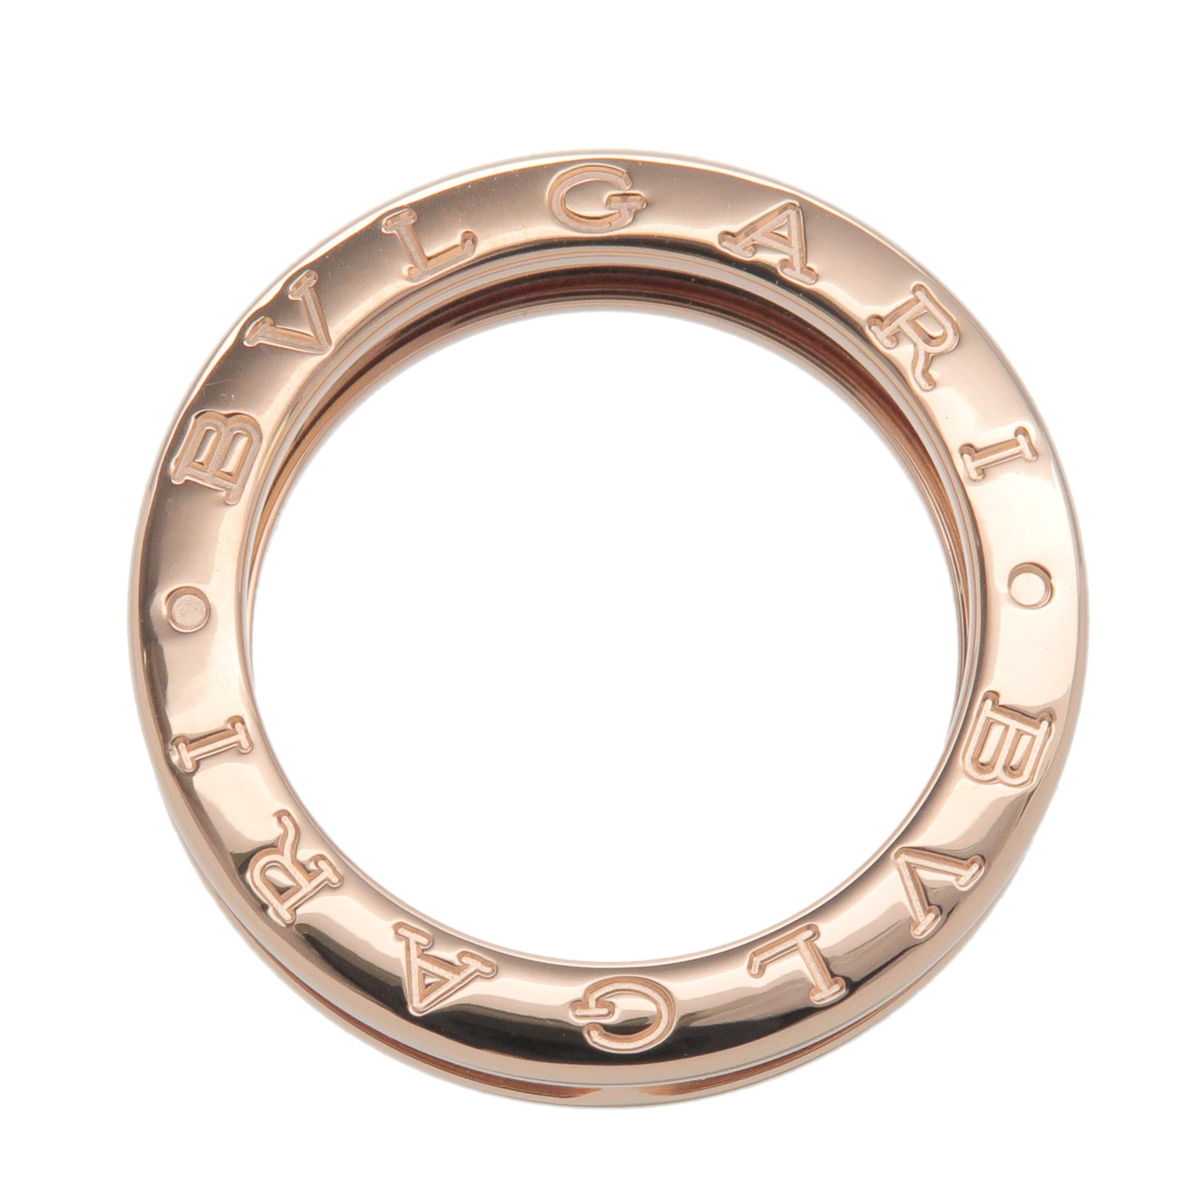 BVLGARI B-Zero1 Ring XS One Band Ring K18 750 Rose Gold #53 US6.5